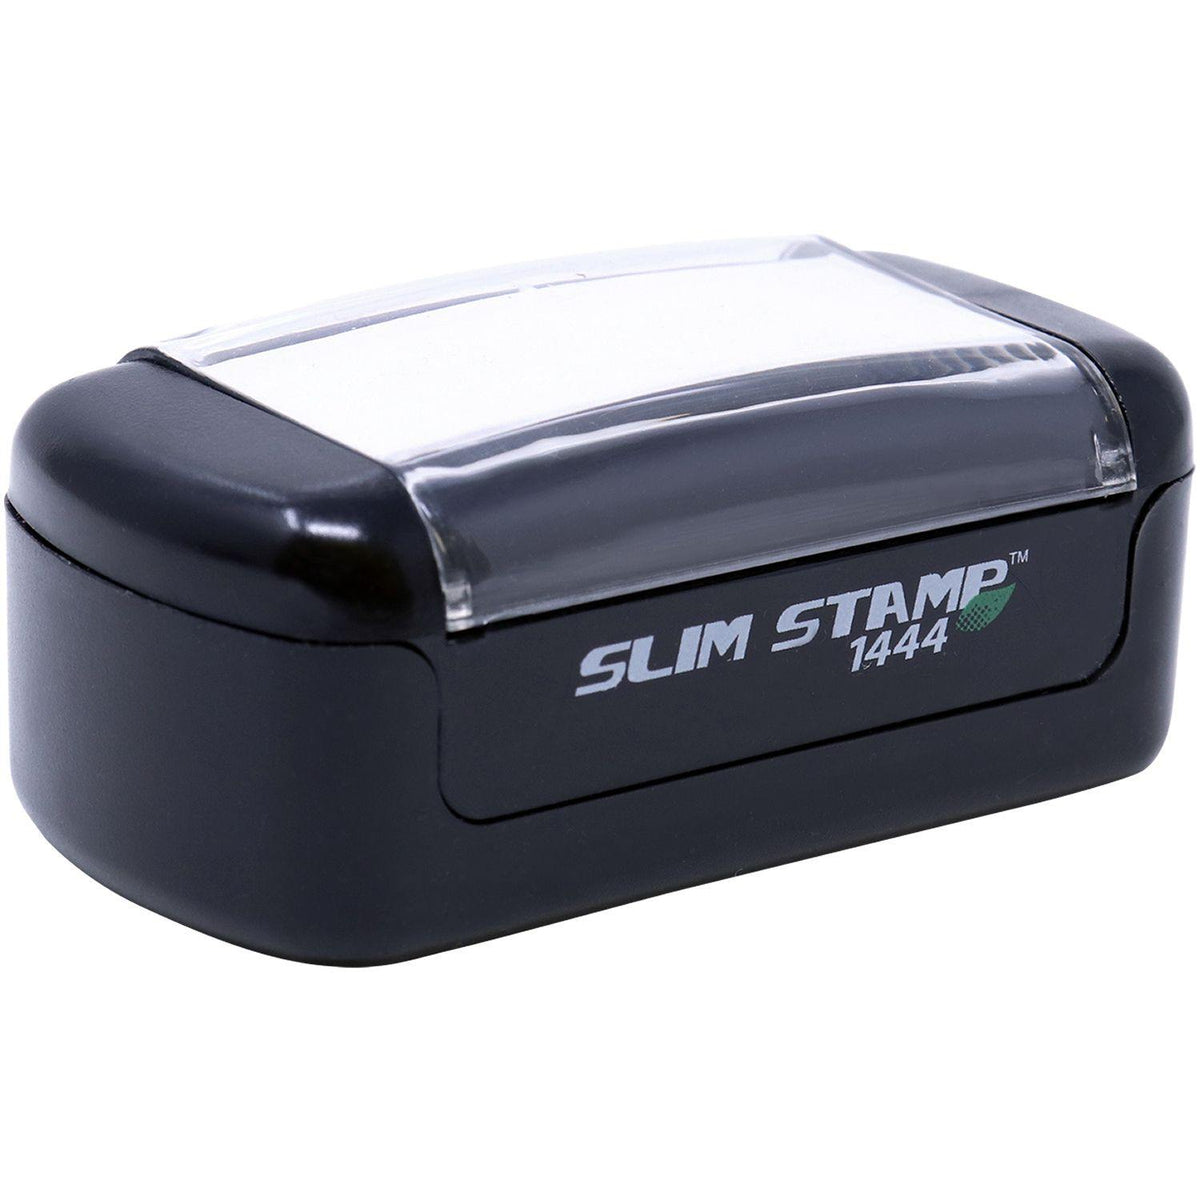 Slim Pre Inked Keep Practicing Needs Improvement Stamp - Engineer Seal Stamps - Brand_Slim, Impression Size_Small, Stamp Type_Pre-Inked Stamp, Type of Use_Teacher